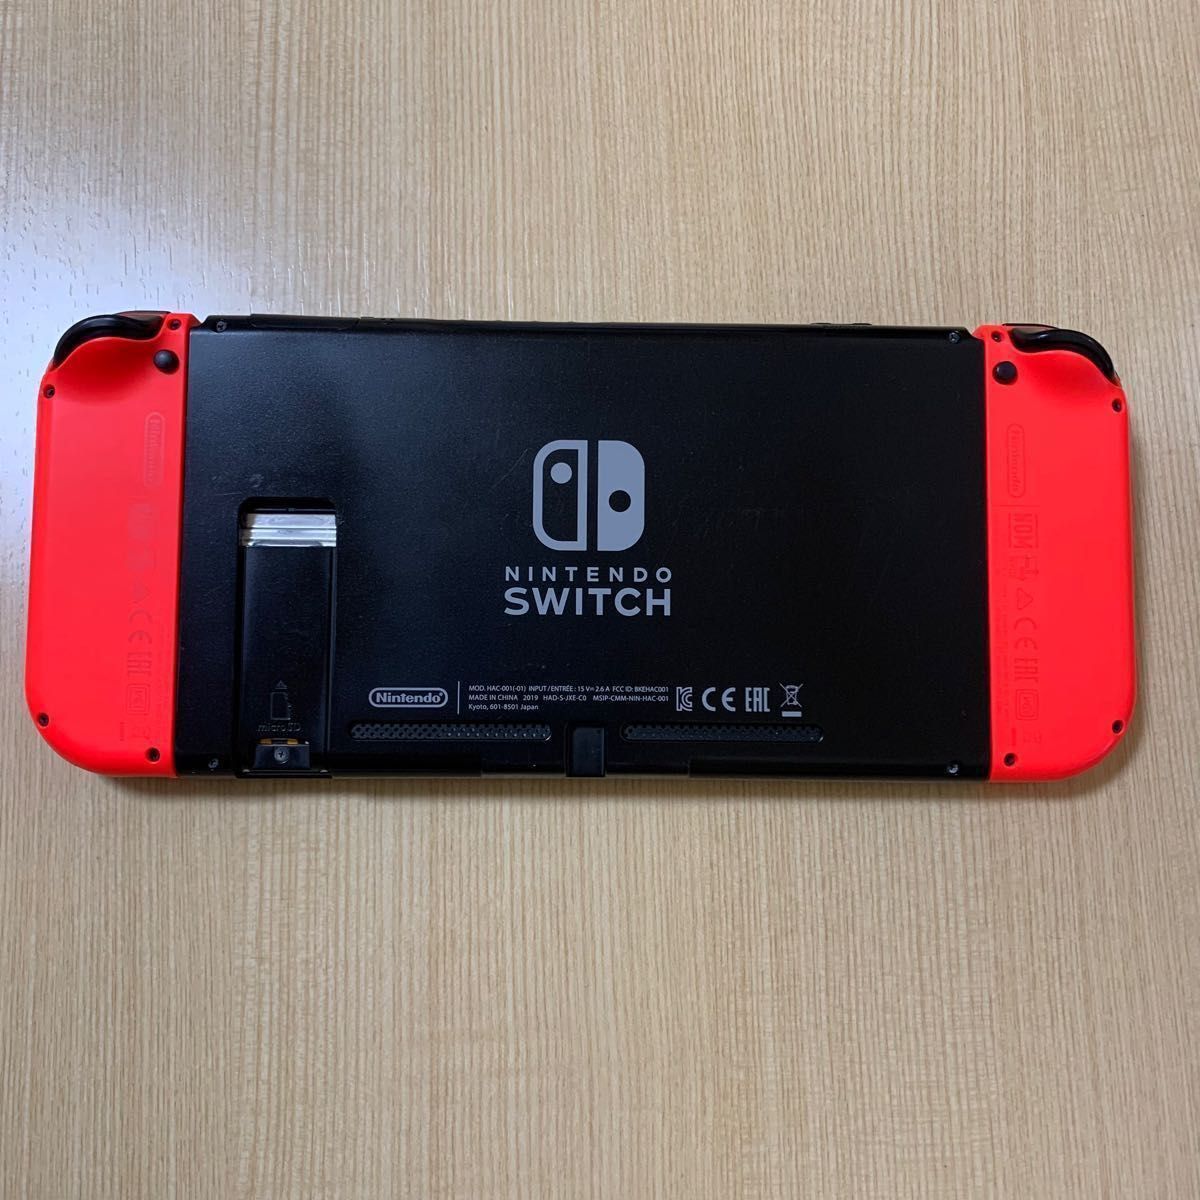 最安値】新型 ニンテンドースイッチ バッテリー強化版 Nintendo Switch